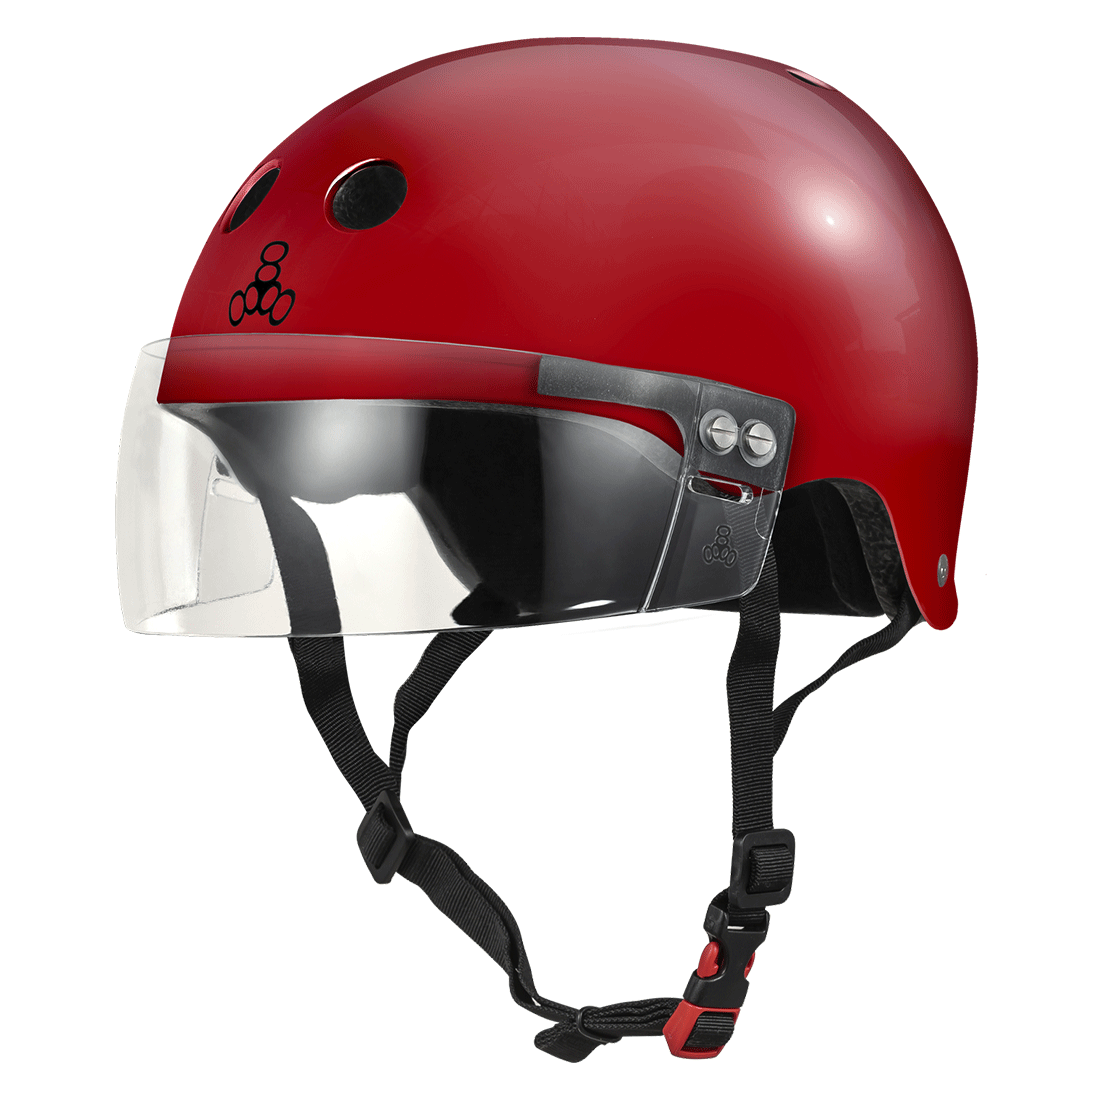 Triple 8 THE Cert SS Visor Helmet - Scarlet Red Gloss Helmets